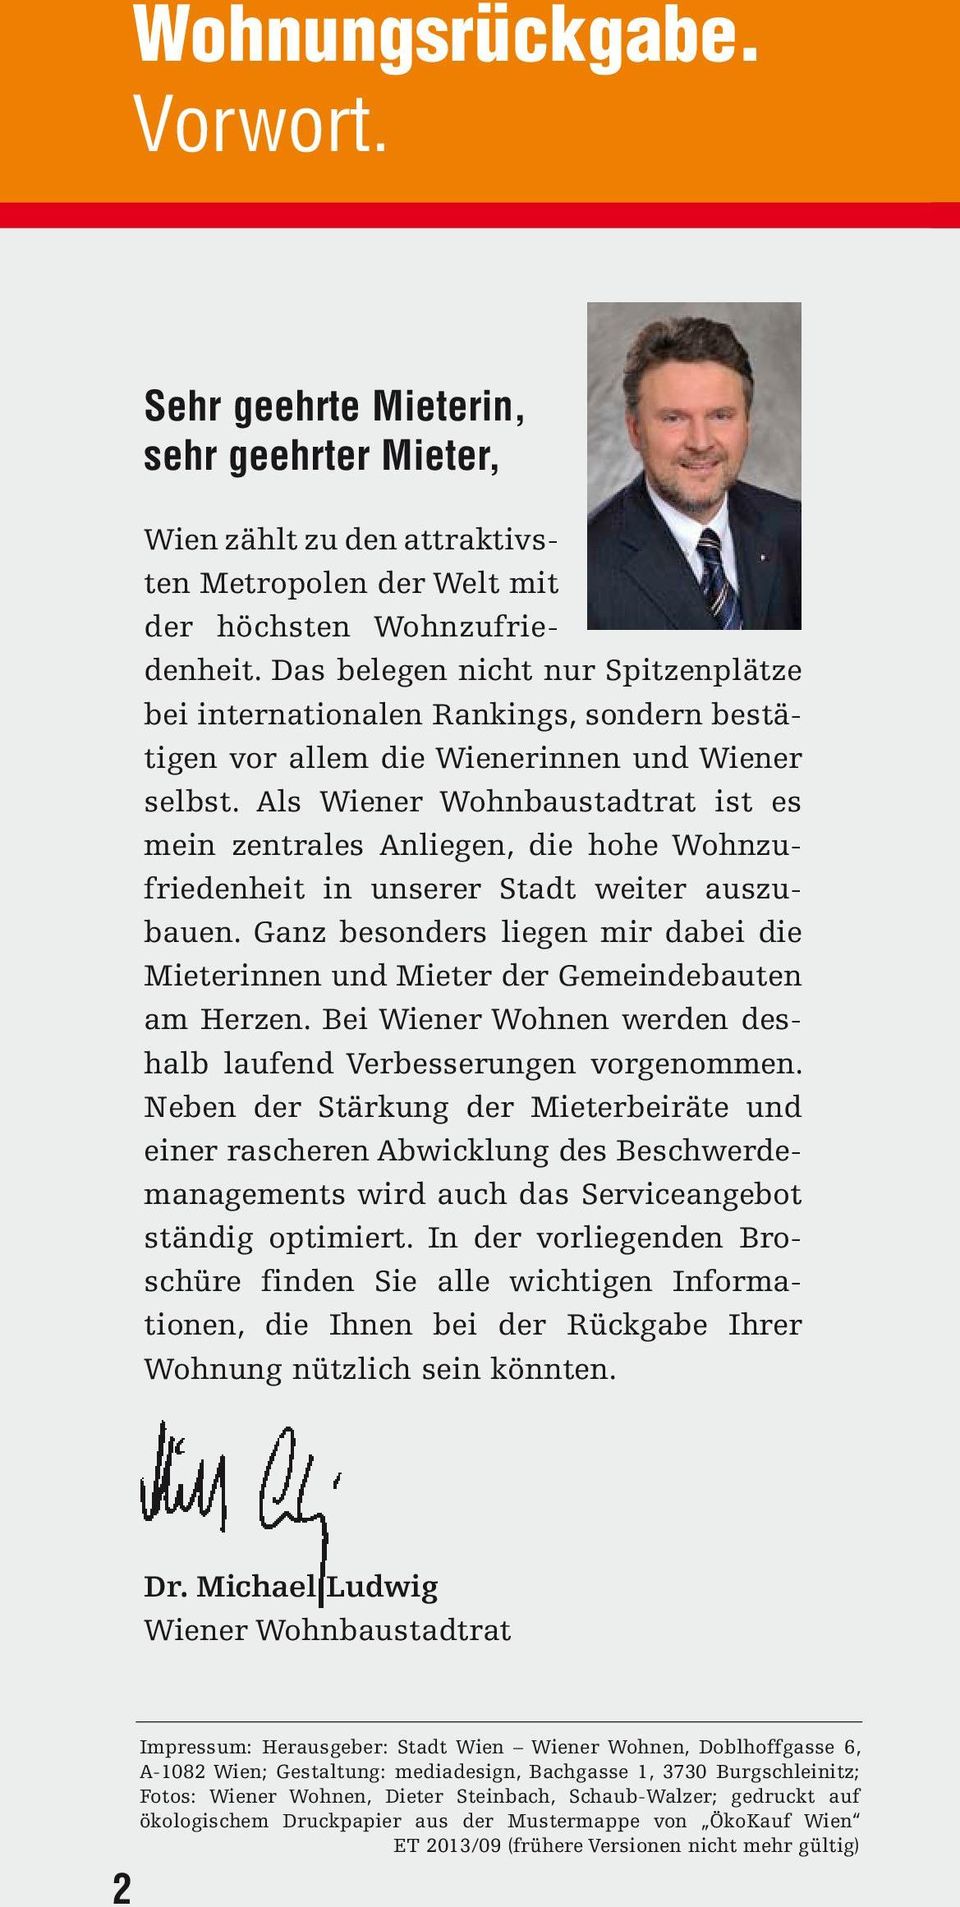 Als Wiener Wohnbaustadtrat ist es mein zentrales Anliegen, die hohe Wohnzufriedenheit in unserer Stadt weiter auszubauen.